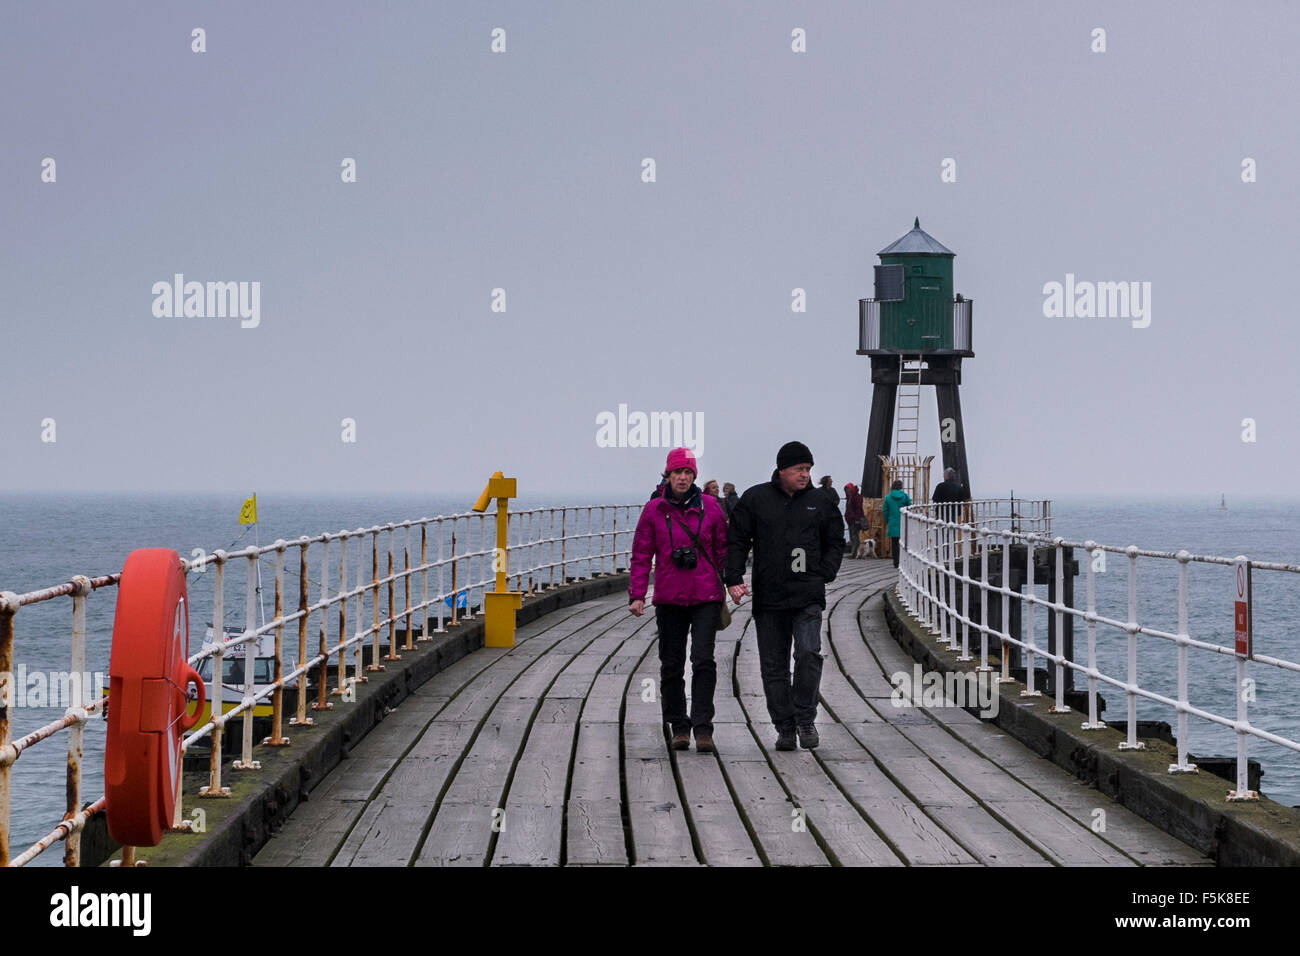 Persone in abiti caldi, camminando su Whitby West Pier estensione, England, Regno Unito - grigio di tavole di legno, il mare e il cielo, riflettono il vento freddo clima autunnale. Foto Stock